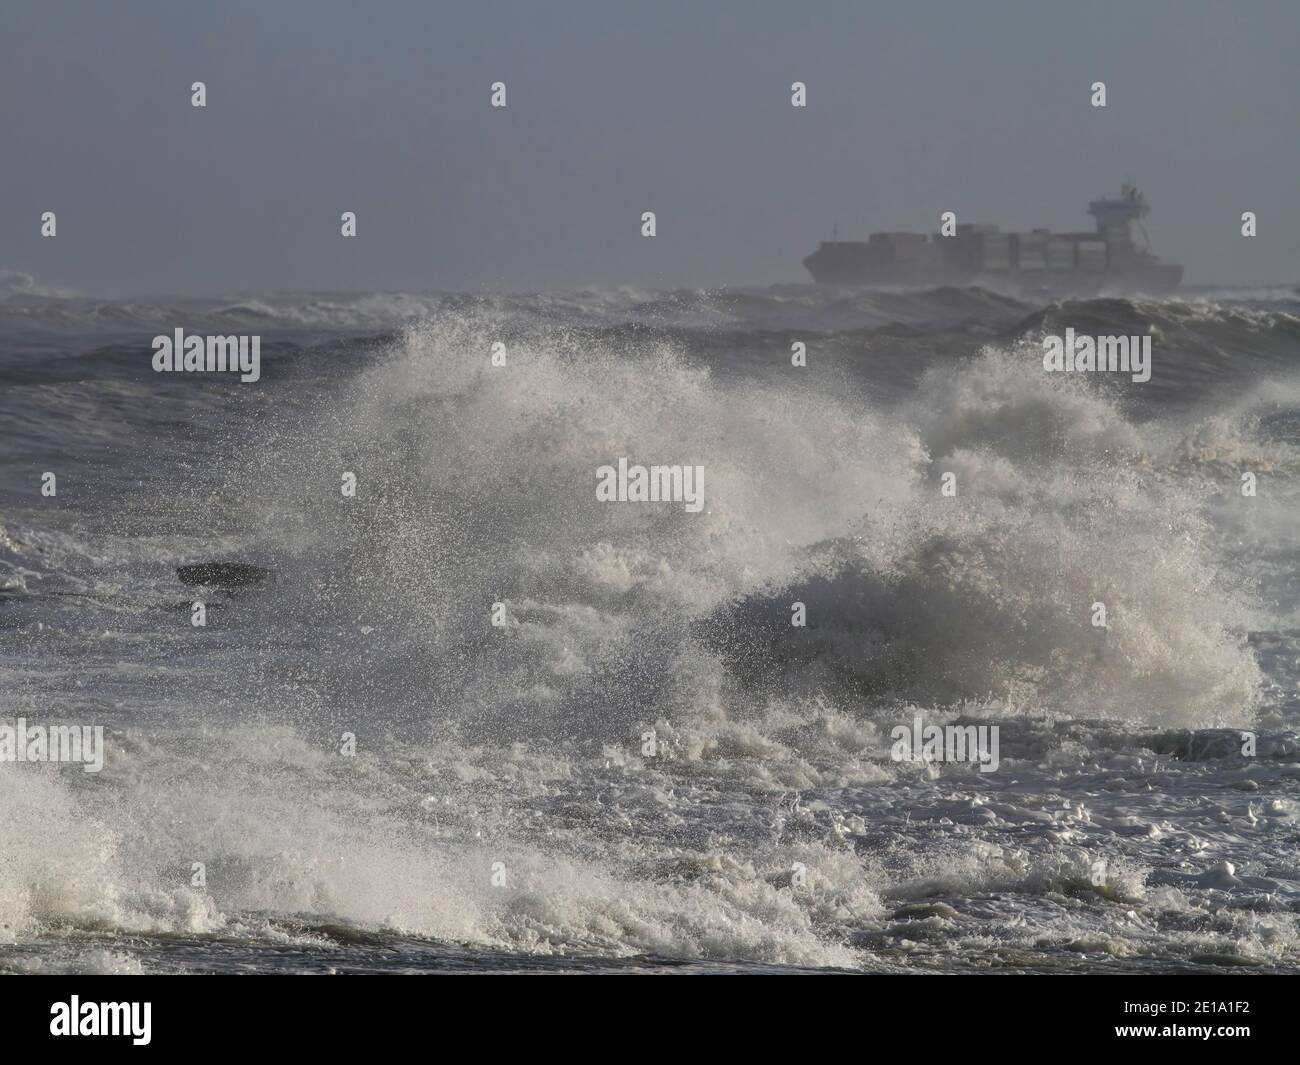 Sturm an der Küste mit brechenden Wellen, Spritzwasser, Spray und einem Schiff am Horizont (Fokus auf den Vordergrund). Stockfoto